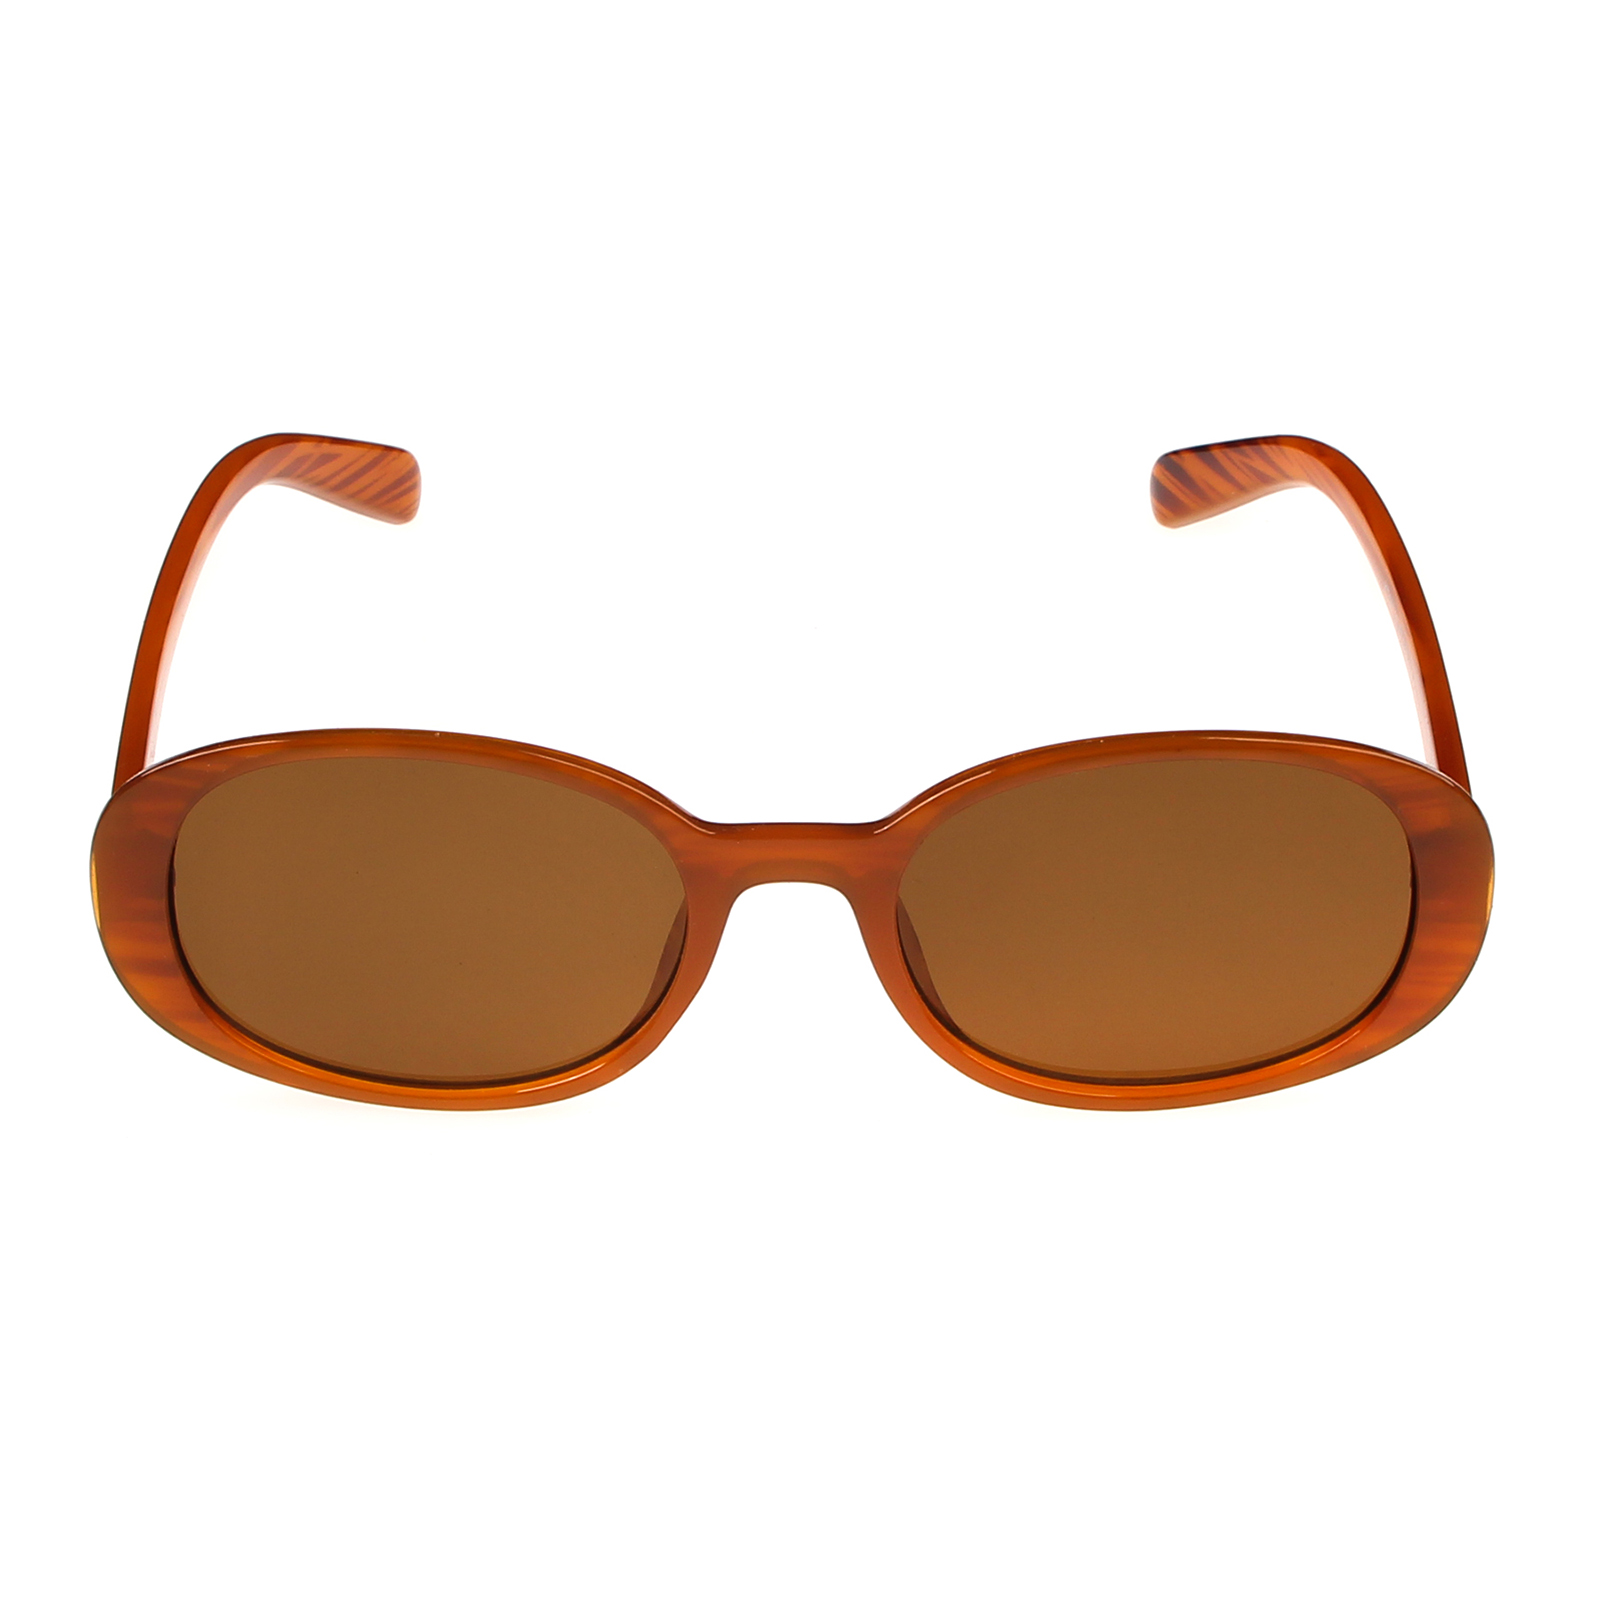 Солнцезащитные очки женские Pretty Mania DP103 коричневые